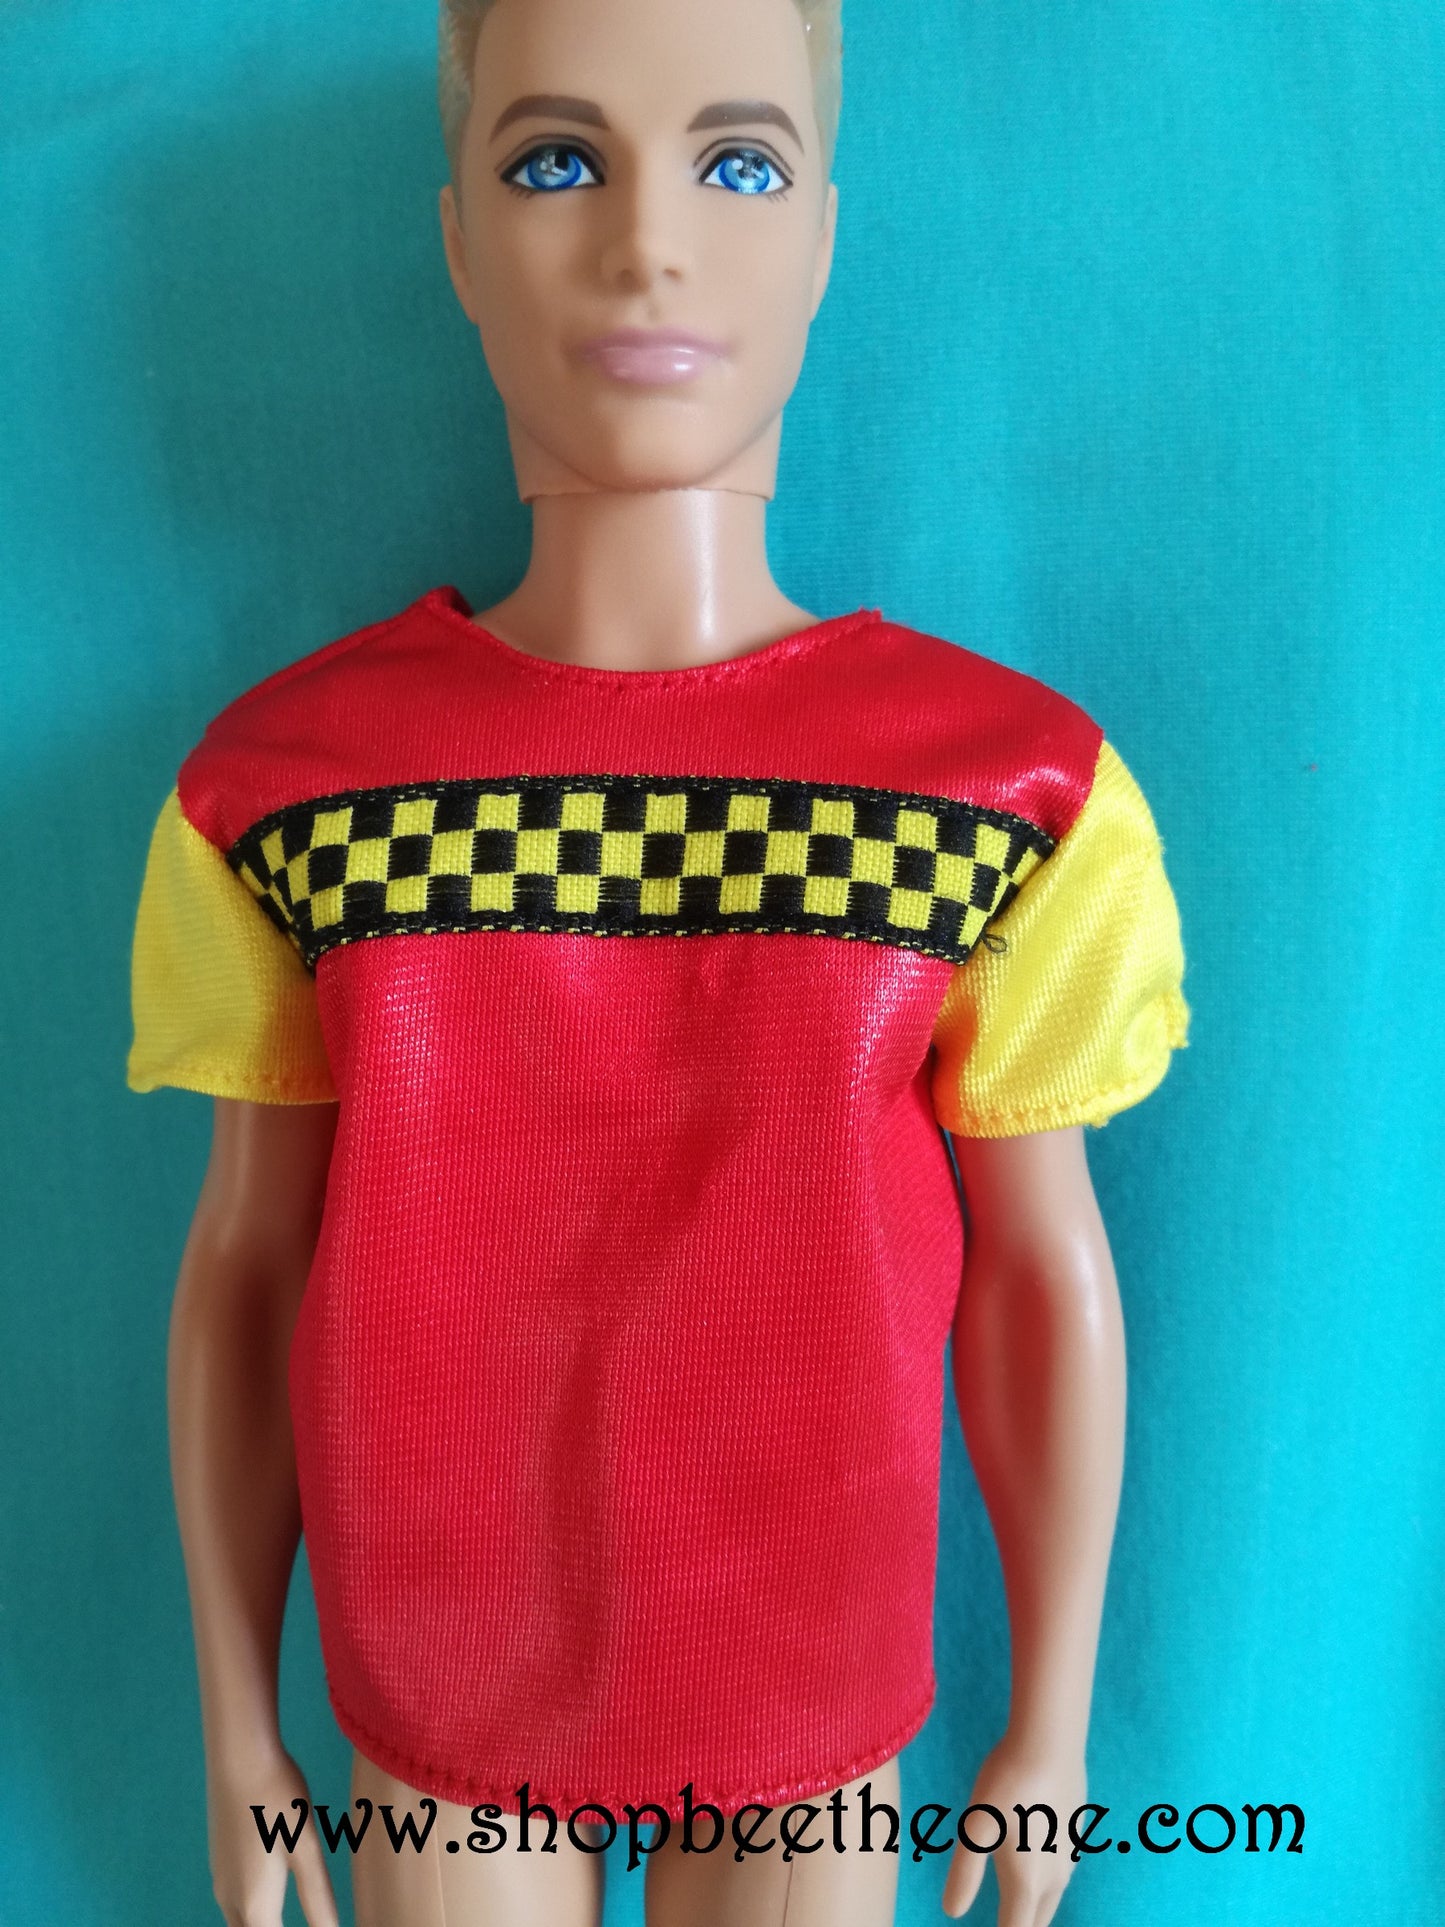 Habillage Mon Premier Ken (Ken My First Fashions) #2945 - Mattel 1992 - Vêtement